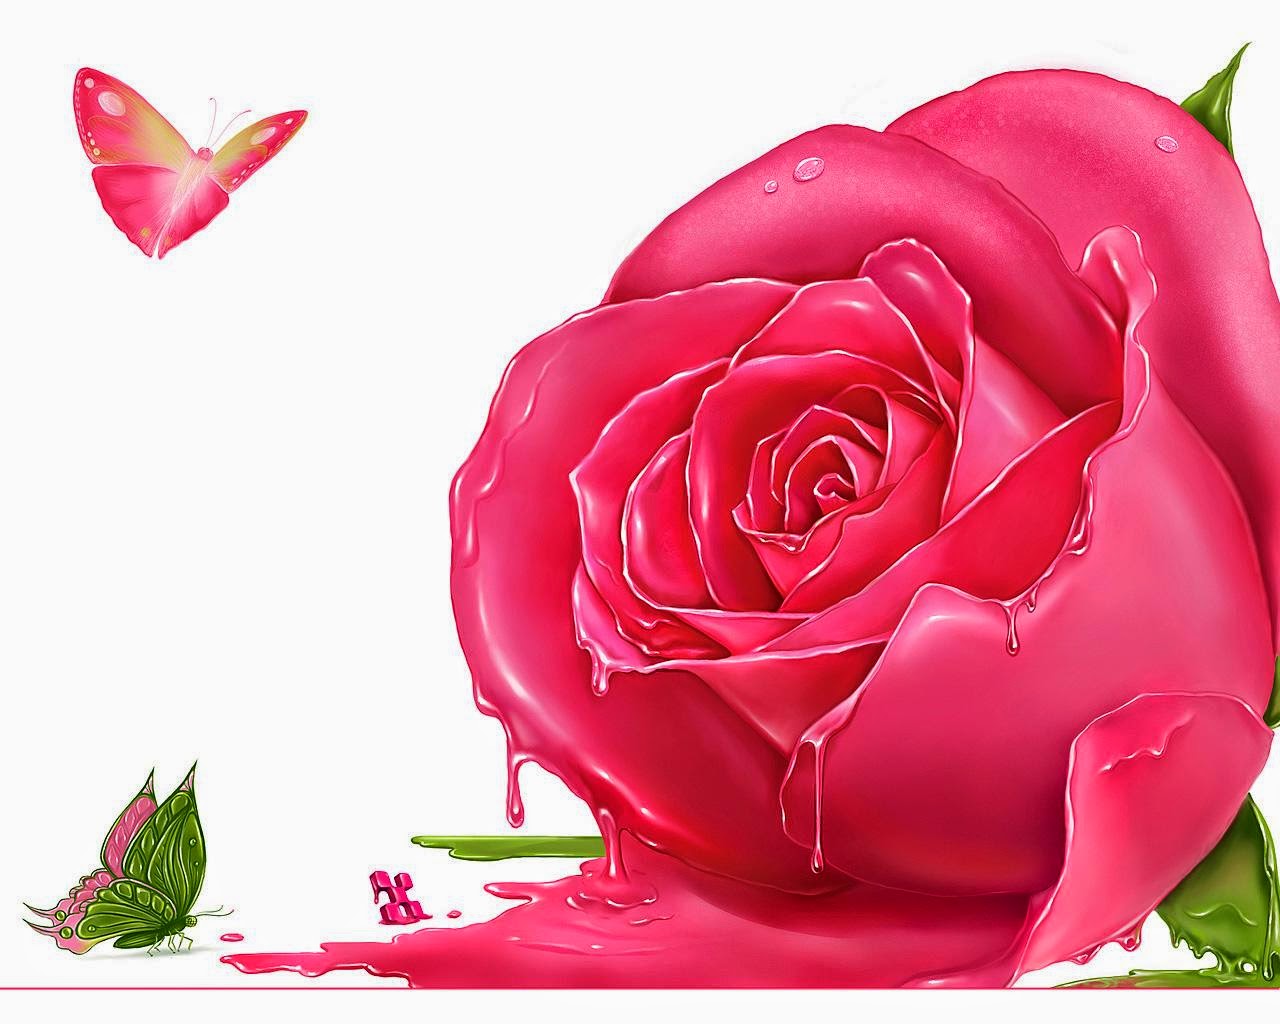 rosentapete,rosa,gartenrosen,rose,blütenblatt,blume